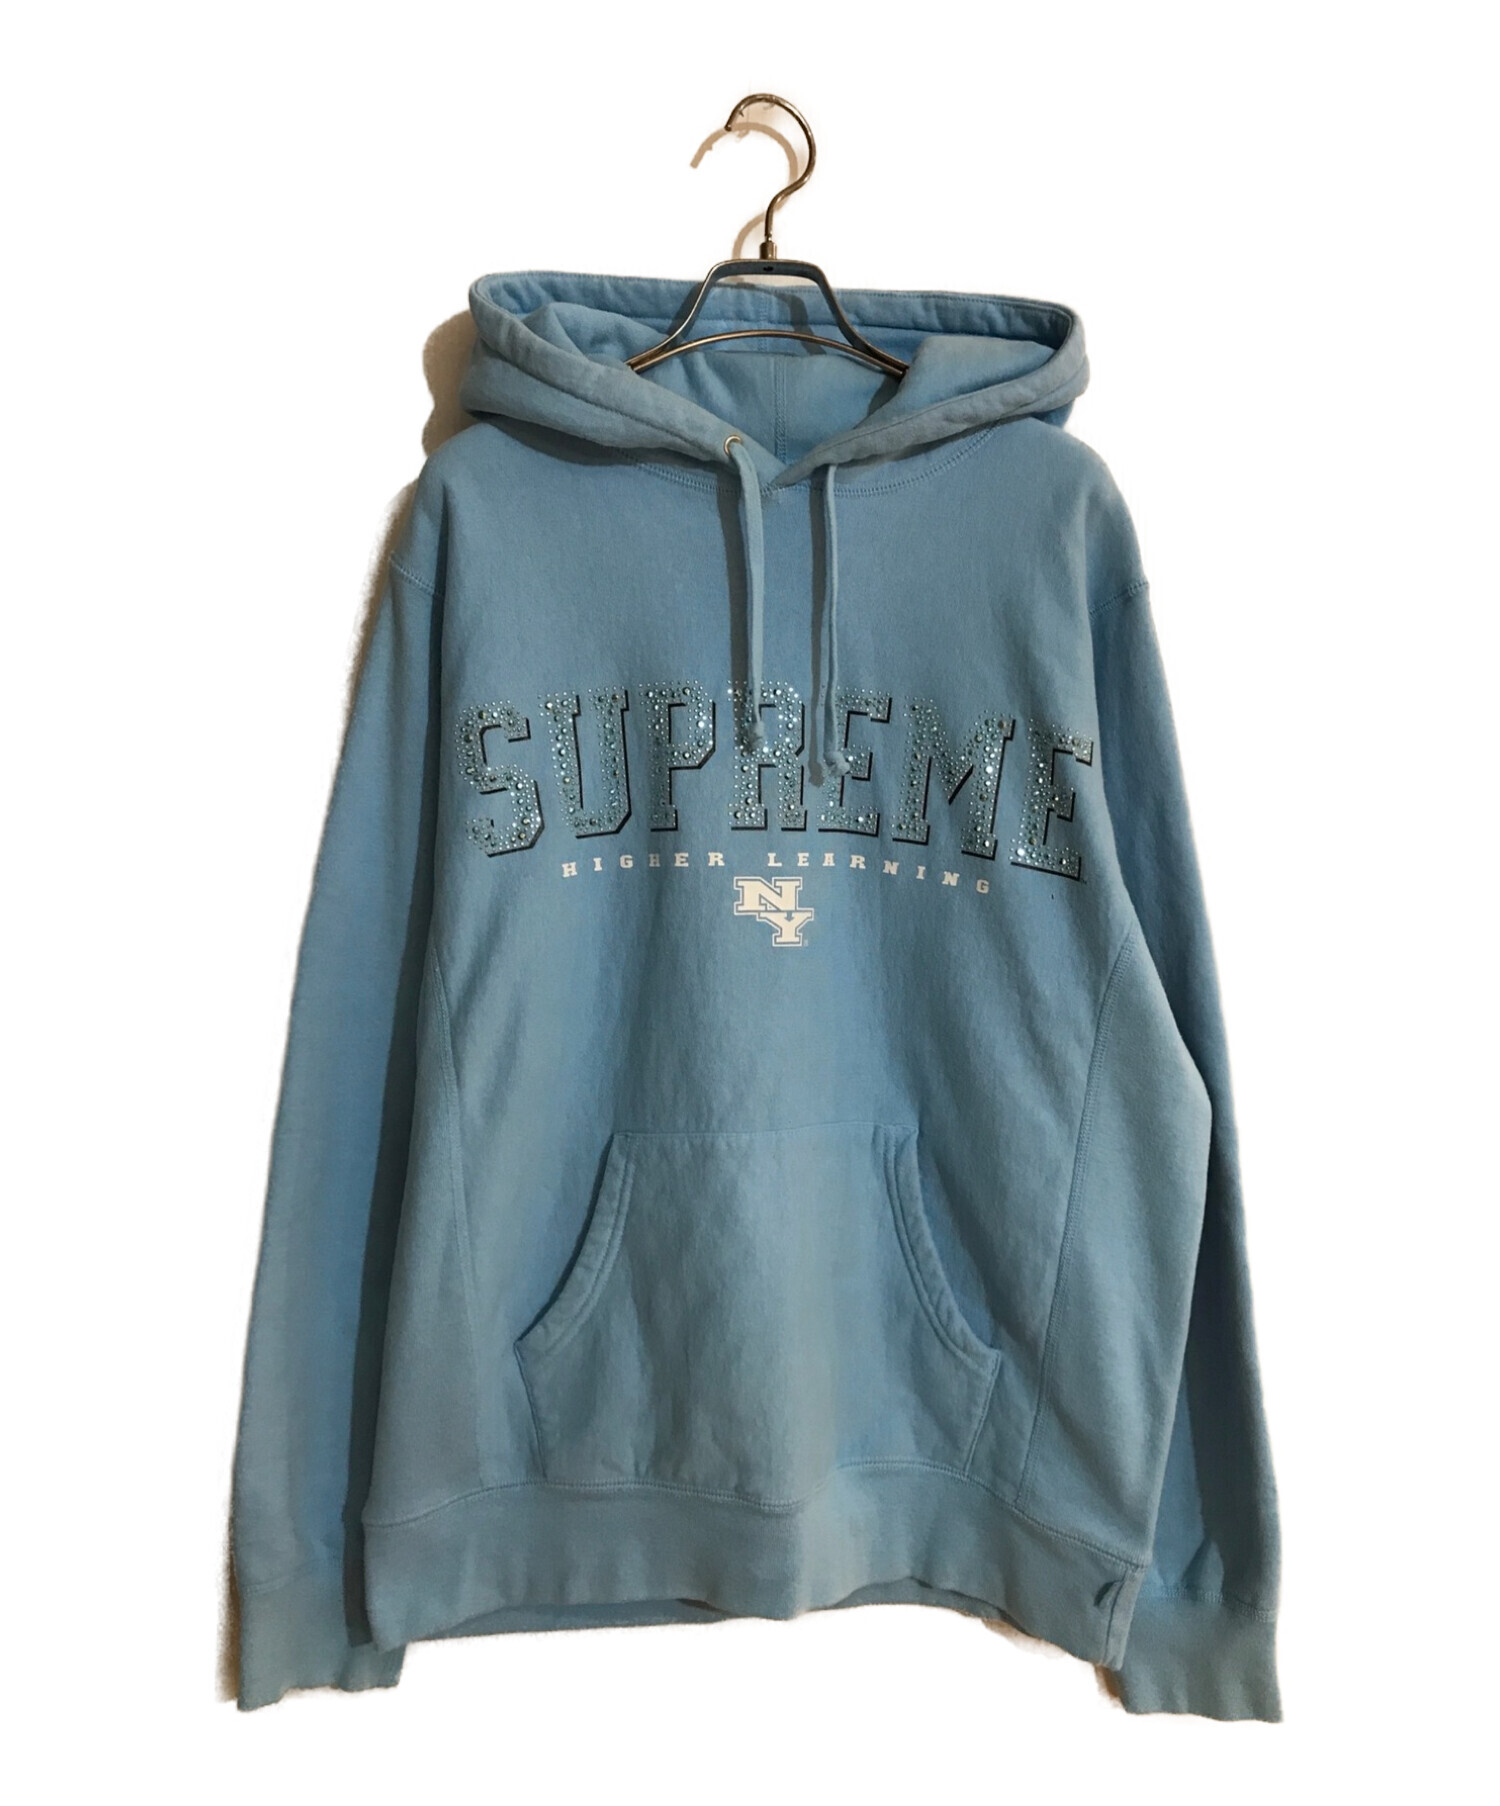 Supreme (シュプリーム) Gems Hooded Sweatshirt/ジェムズフーディスウェットシャツ ブルー サイズ:M